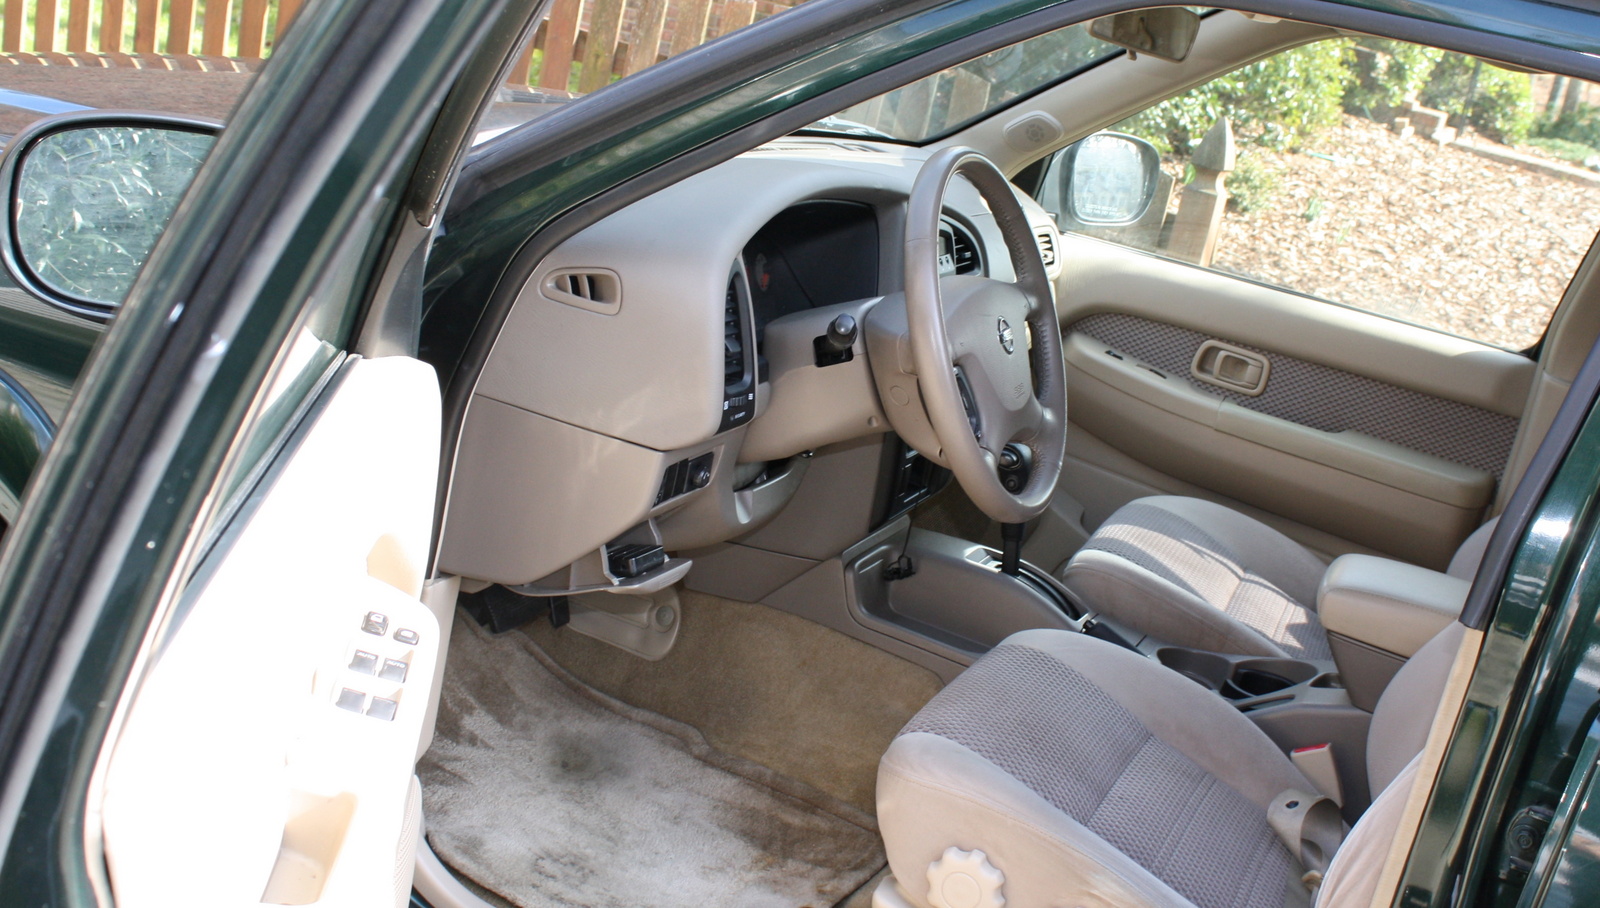 2002 Nissan pathfinder interior pictures #1